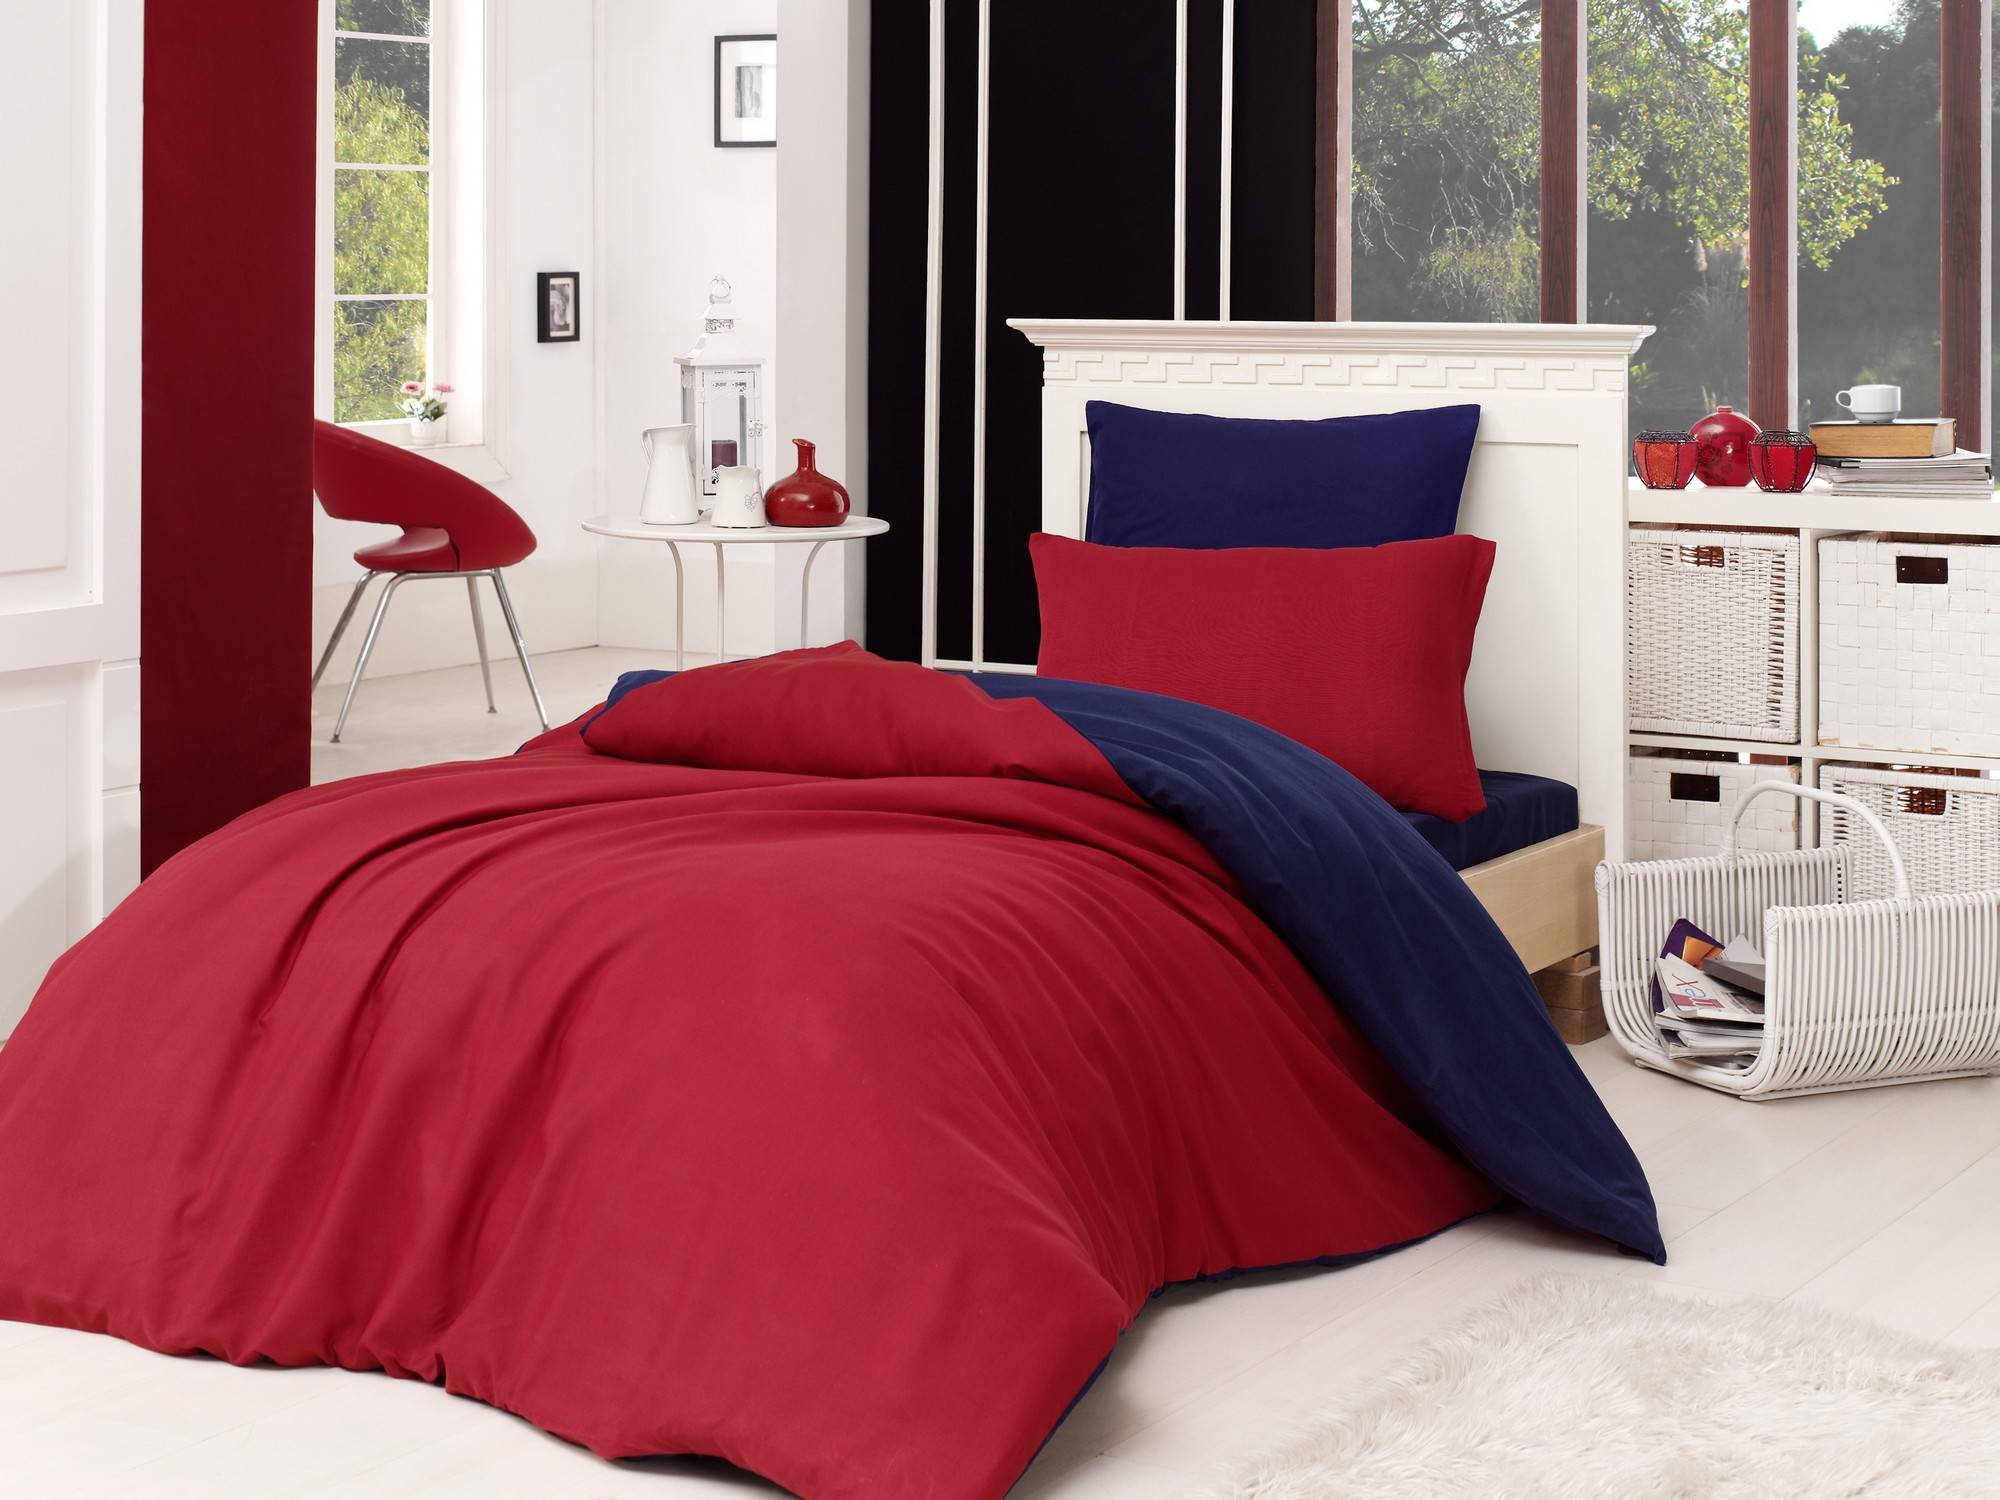 Zweifarbige Bettwäsche 160x220cm mit Flachbettlaken 160x240cm und Kissenbezug 50x70cm Duopligo Rot und Dunkelblau